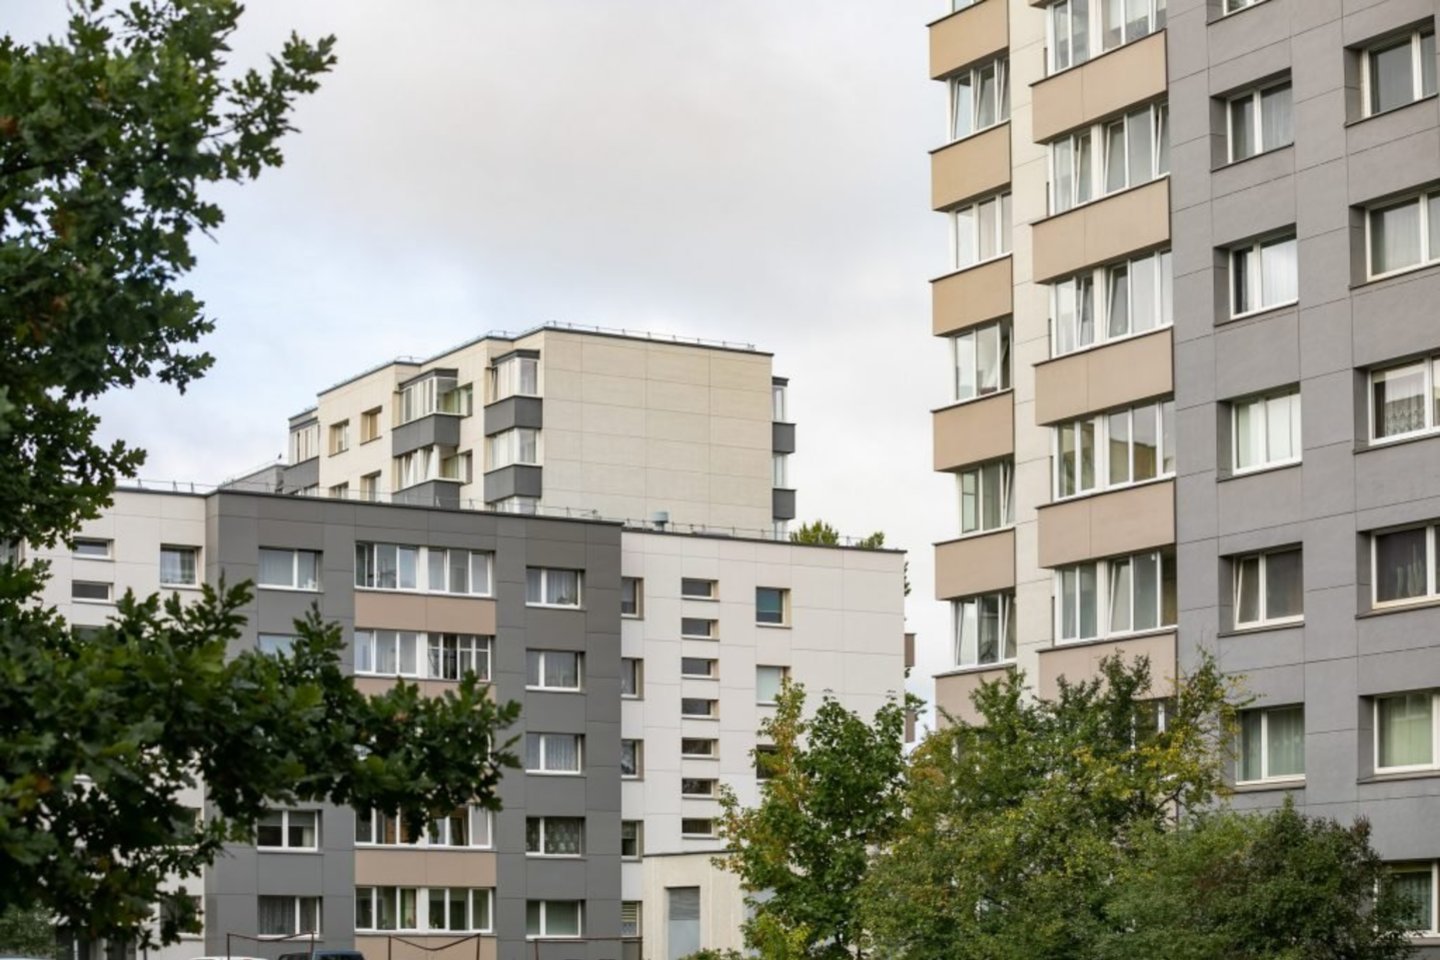 Vilniaus miesto savivaldybė perka 15 butų, kuriuose savarankiškai apsigyvens pilnamečiai vilniečiai su proto ar psichikos negalia, užtikrinant socialinių darbuotojų individualią pagalbą.